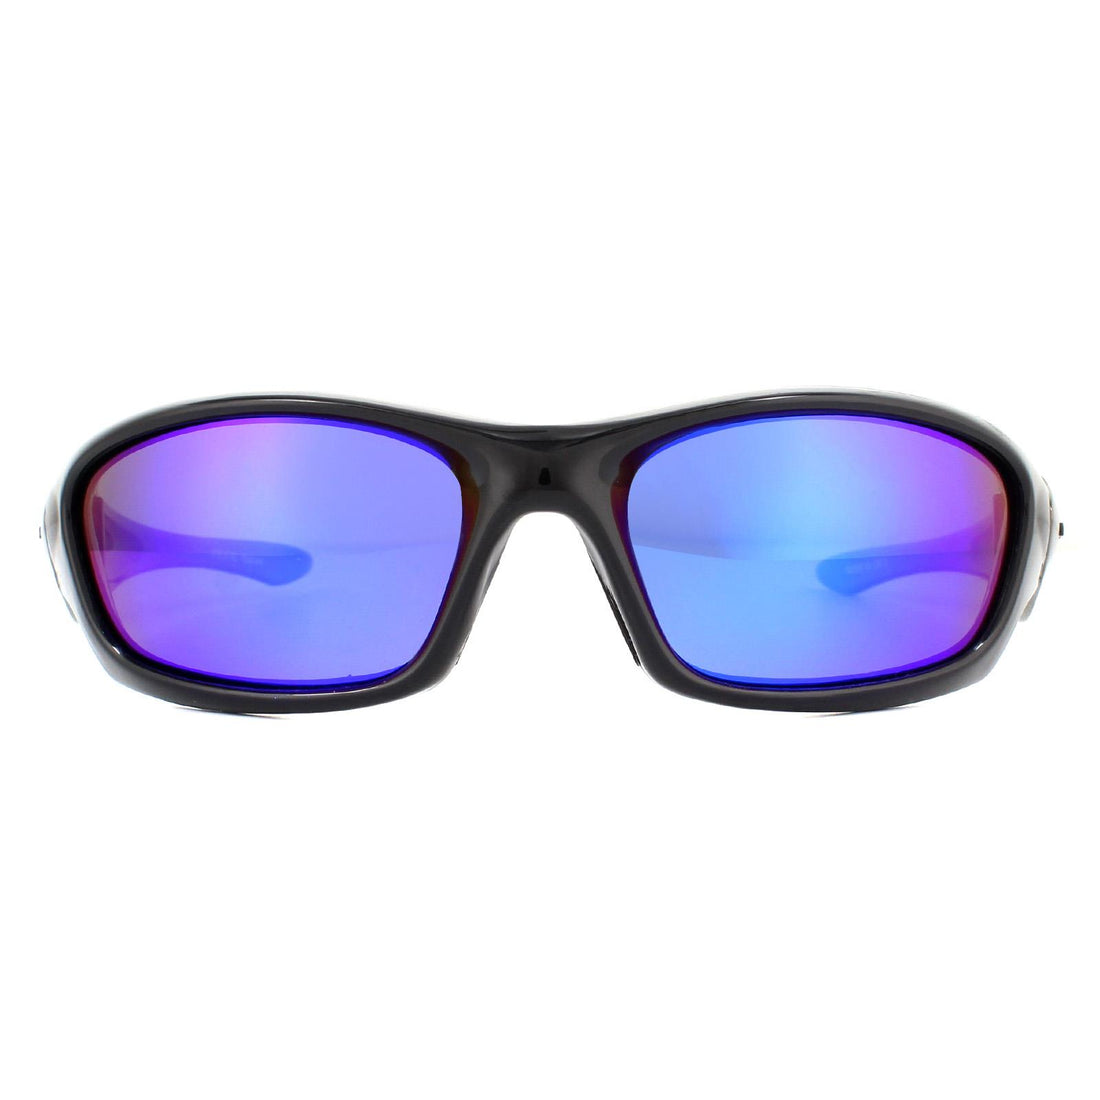 Eyelevel River Sunglasses Black / Blue Polarized